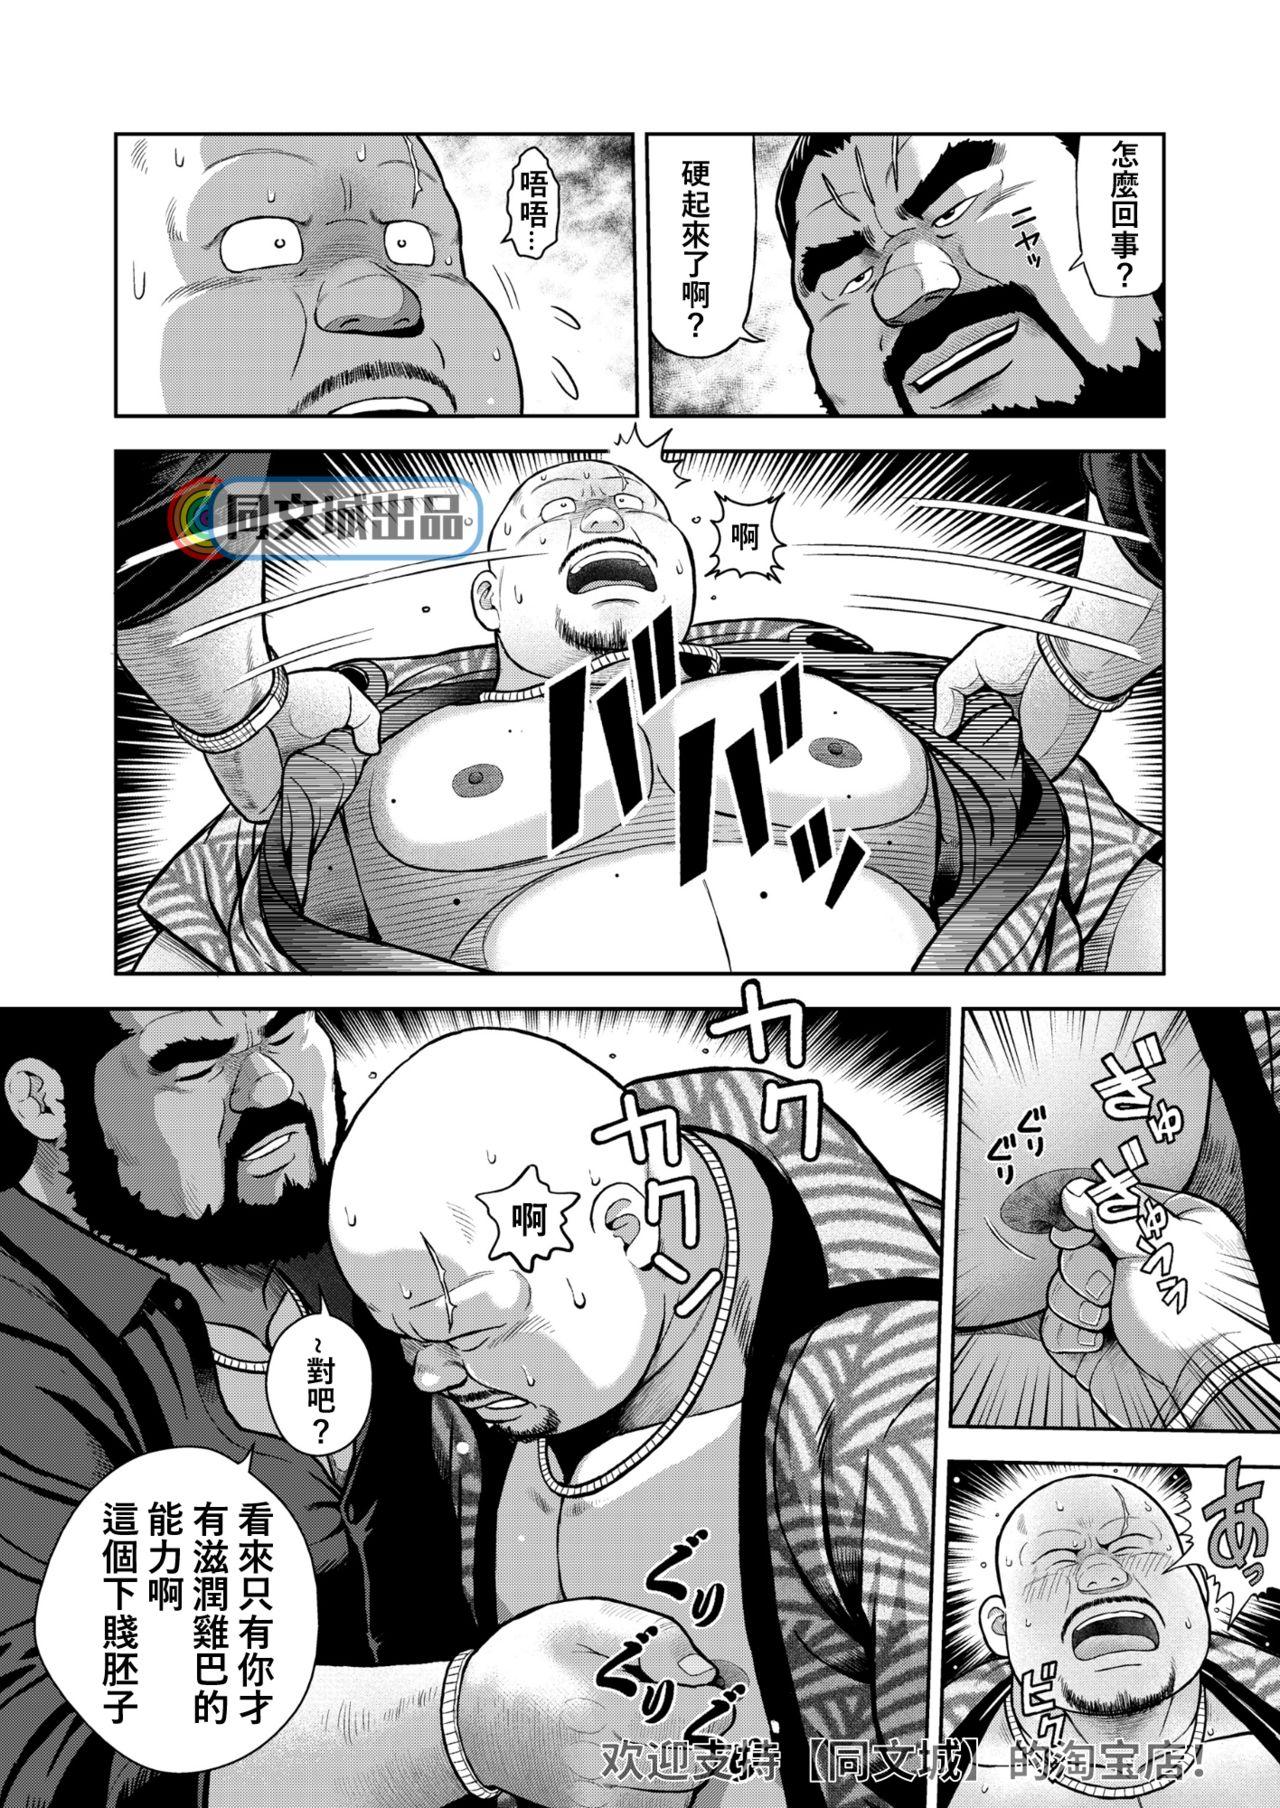 Que kunoyu jyuuhatihatsume otoko no kunsyou Sucks - Page 10